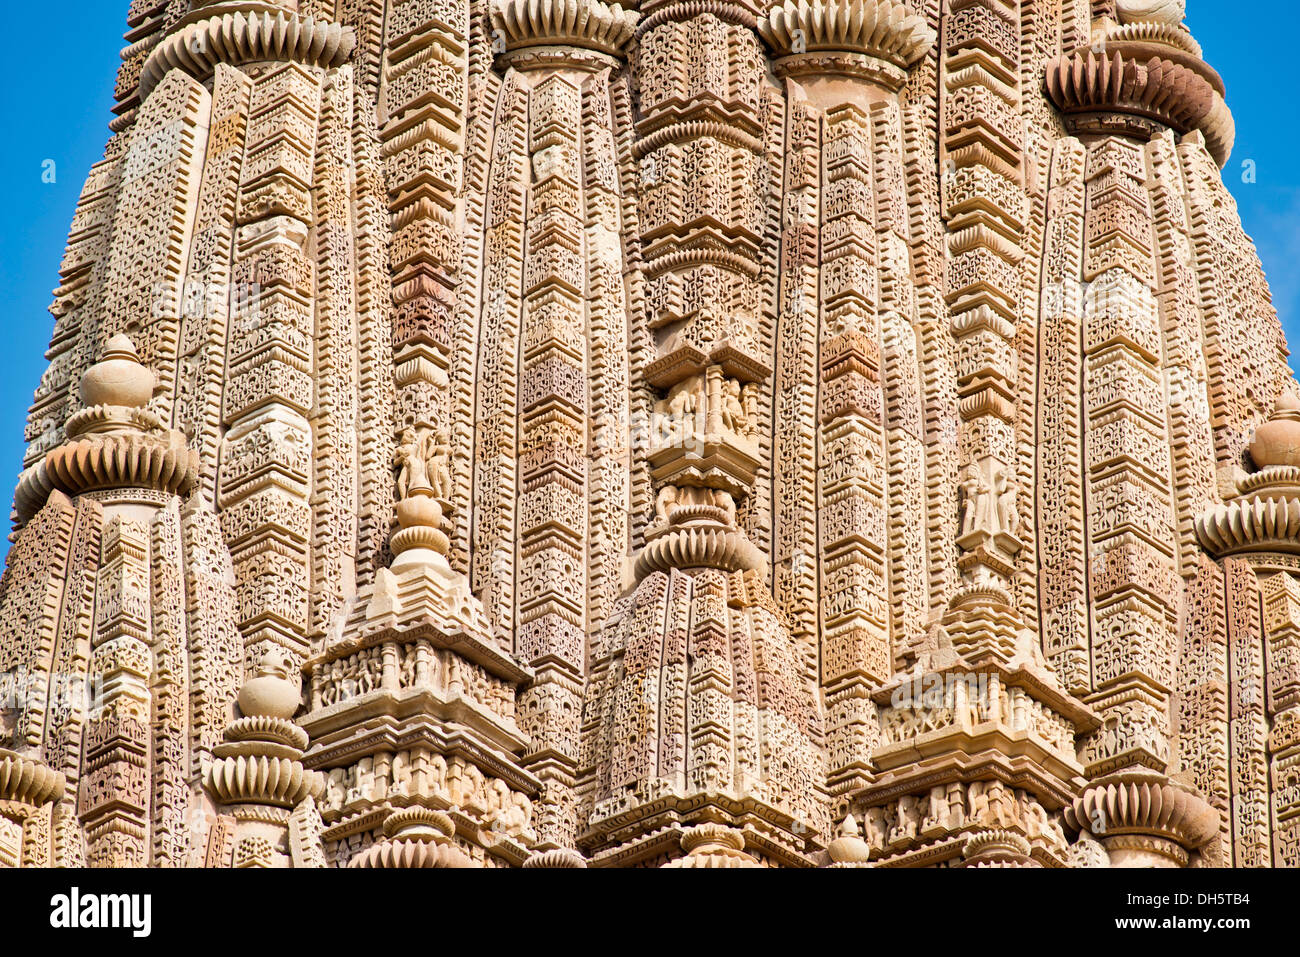 Ornaments on the Shikhara Tower, Kandariya Mahadeva temple, Khajuraho Group of Monuments, UNESCO World Heritage Site Stock Photo